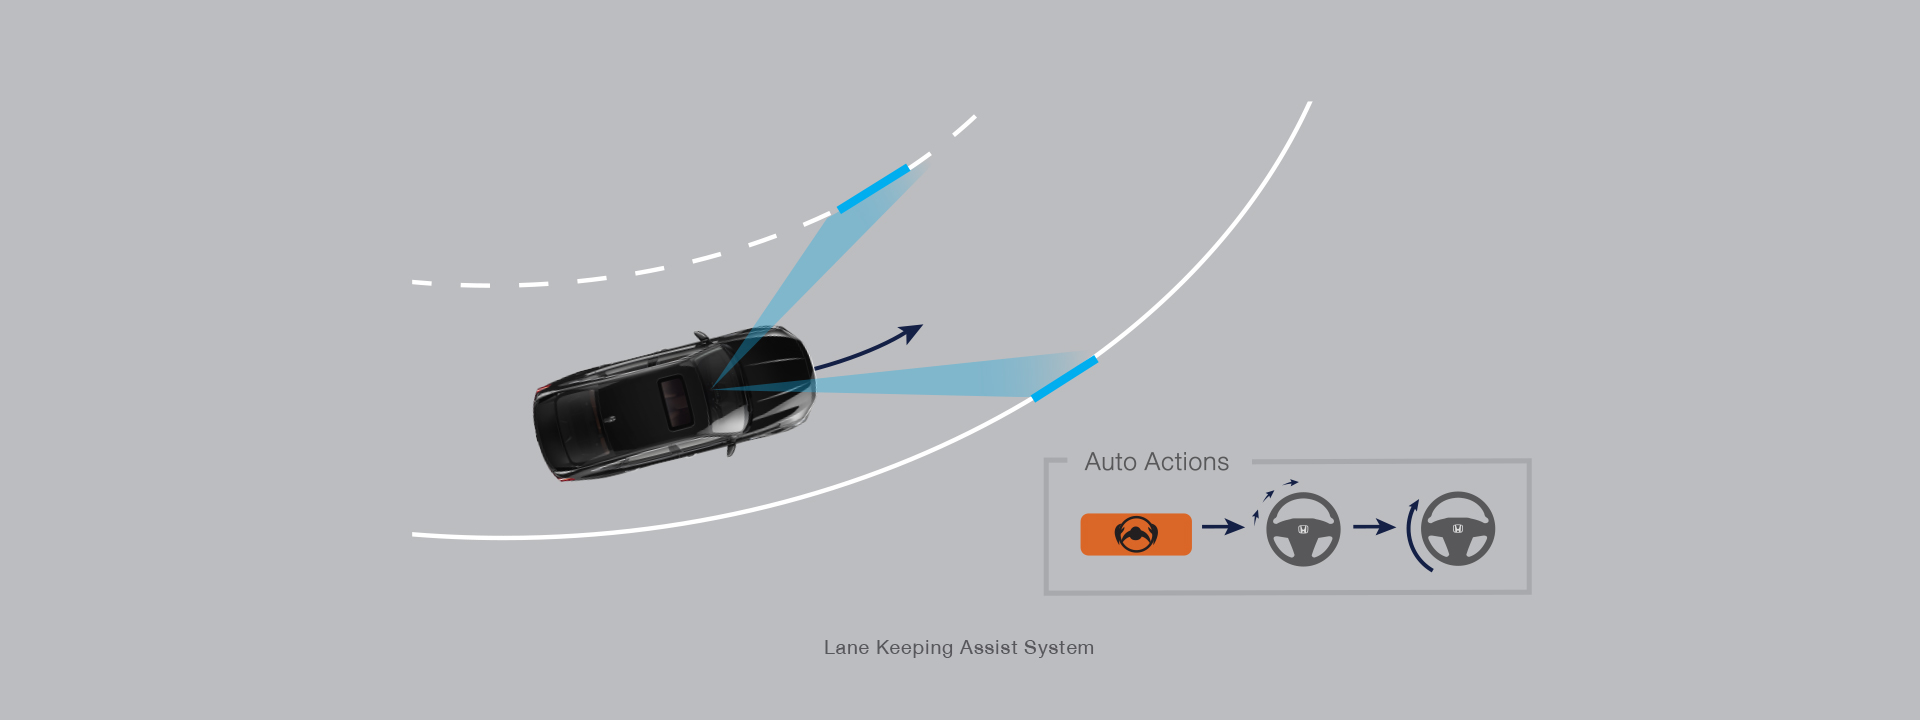 Lane Keeping Assist System (LKAS) ระบบช่วยควบคุมรถให้อยู่ในช่องทางเดินรถ